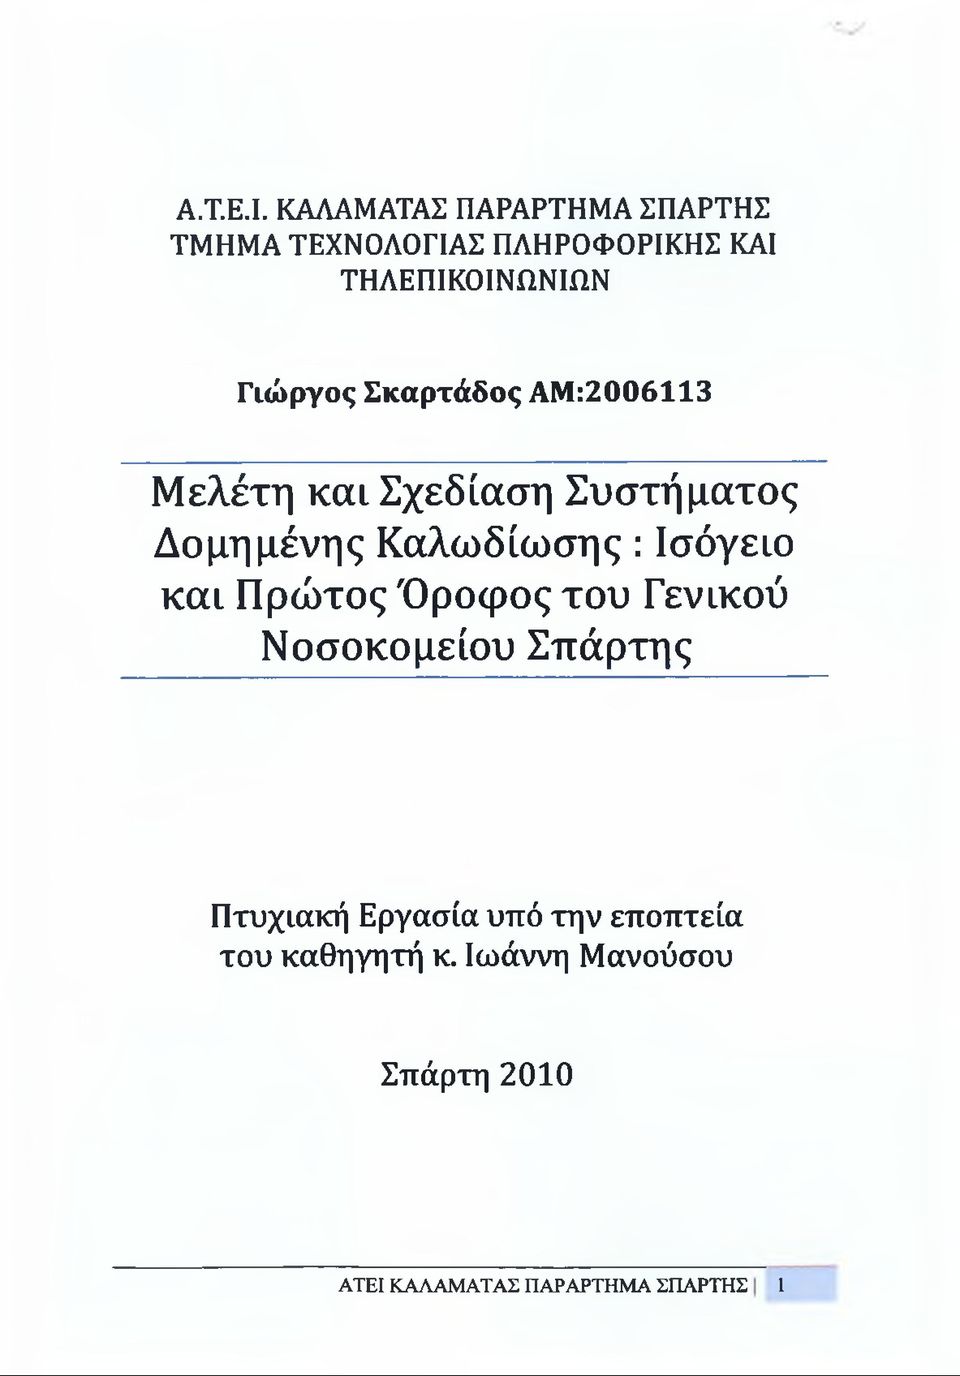 ΑΜ:2006113 Μελέτη και Σχεδίαση Συστήματος Δομημένης Καλωδίωσης : Ισόγειο και Πρώτος Όροφος του